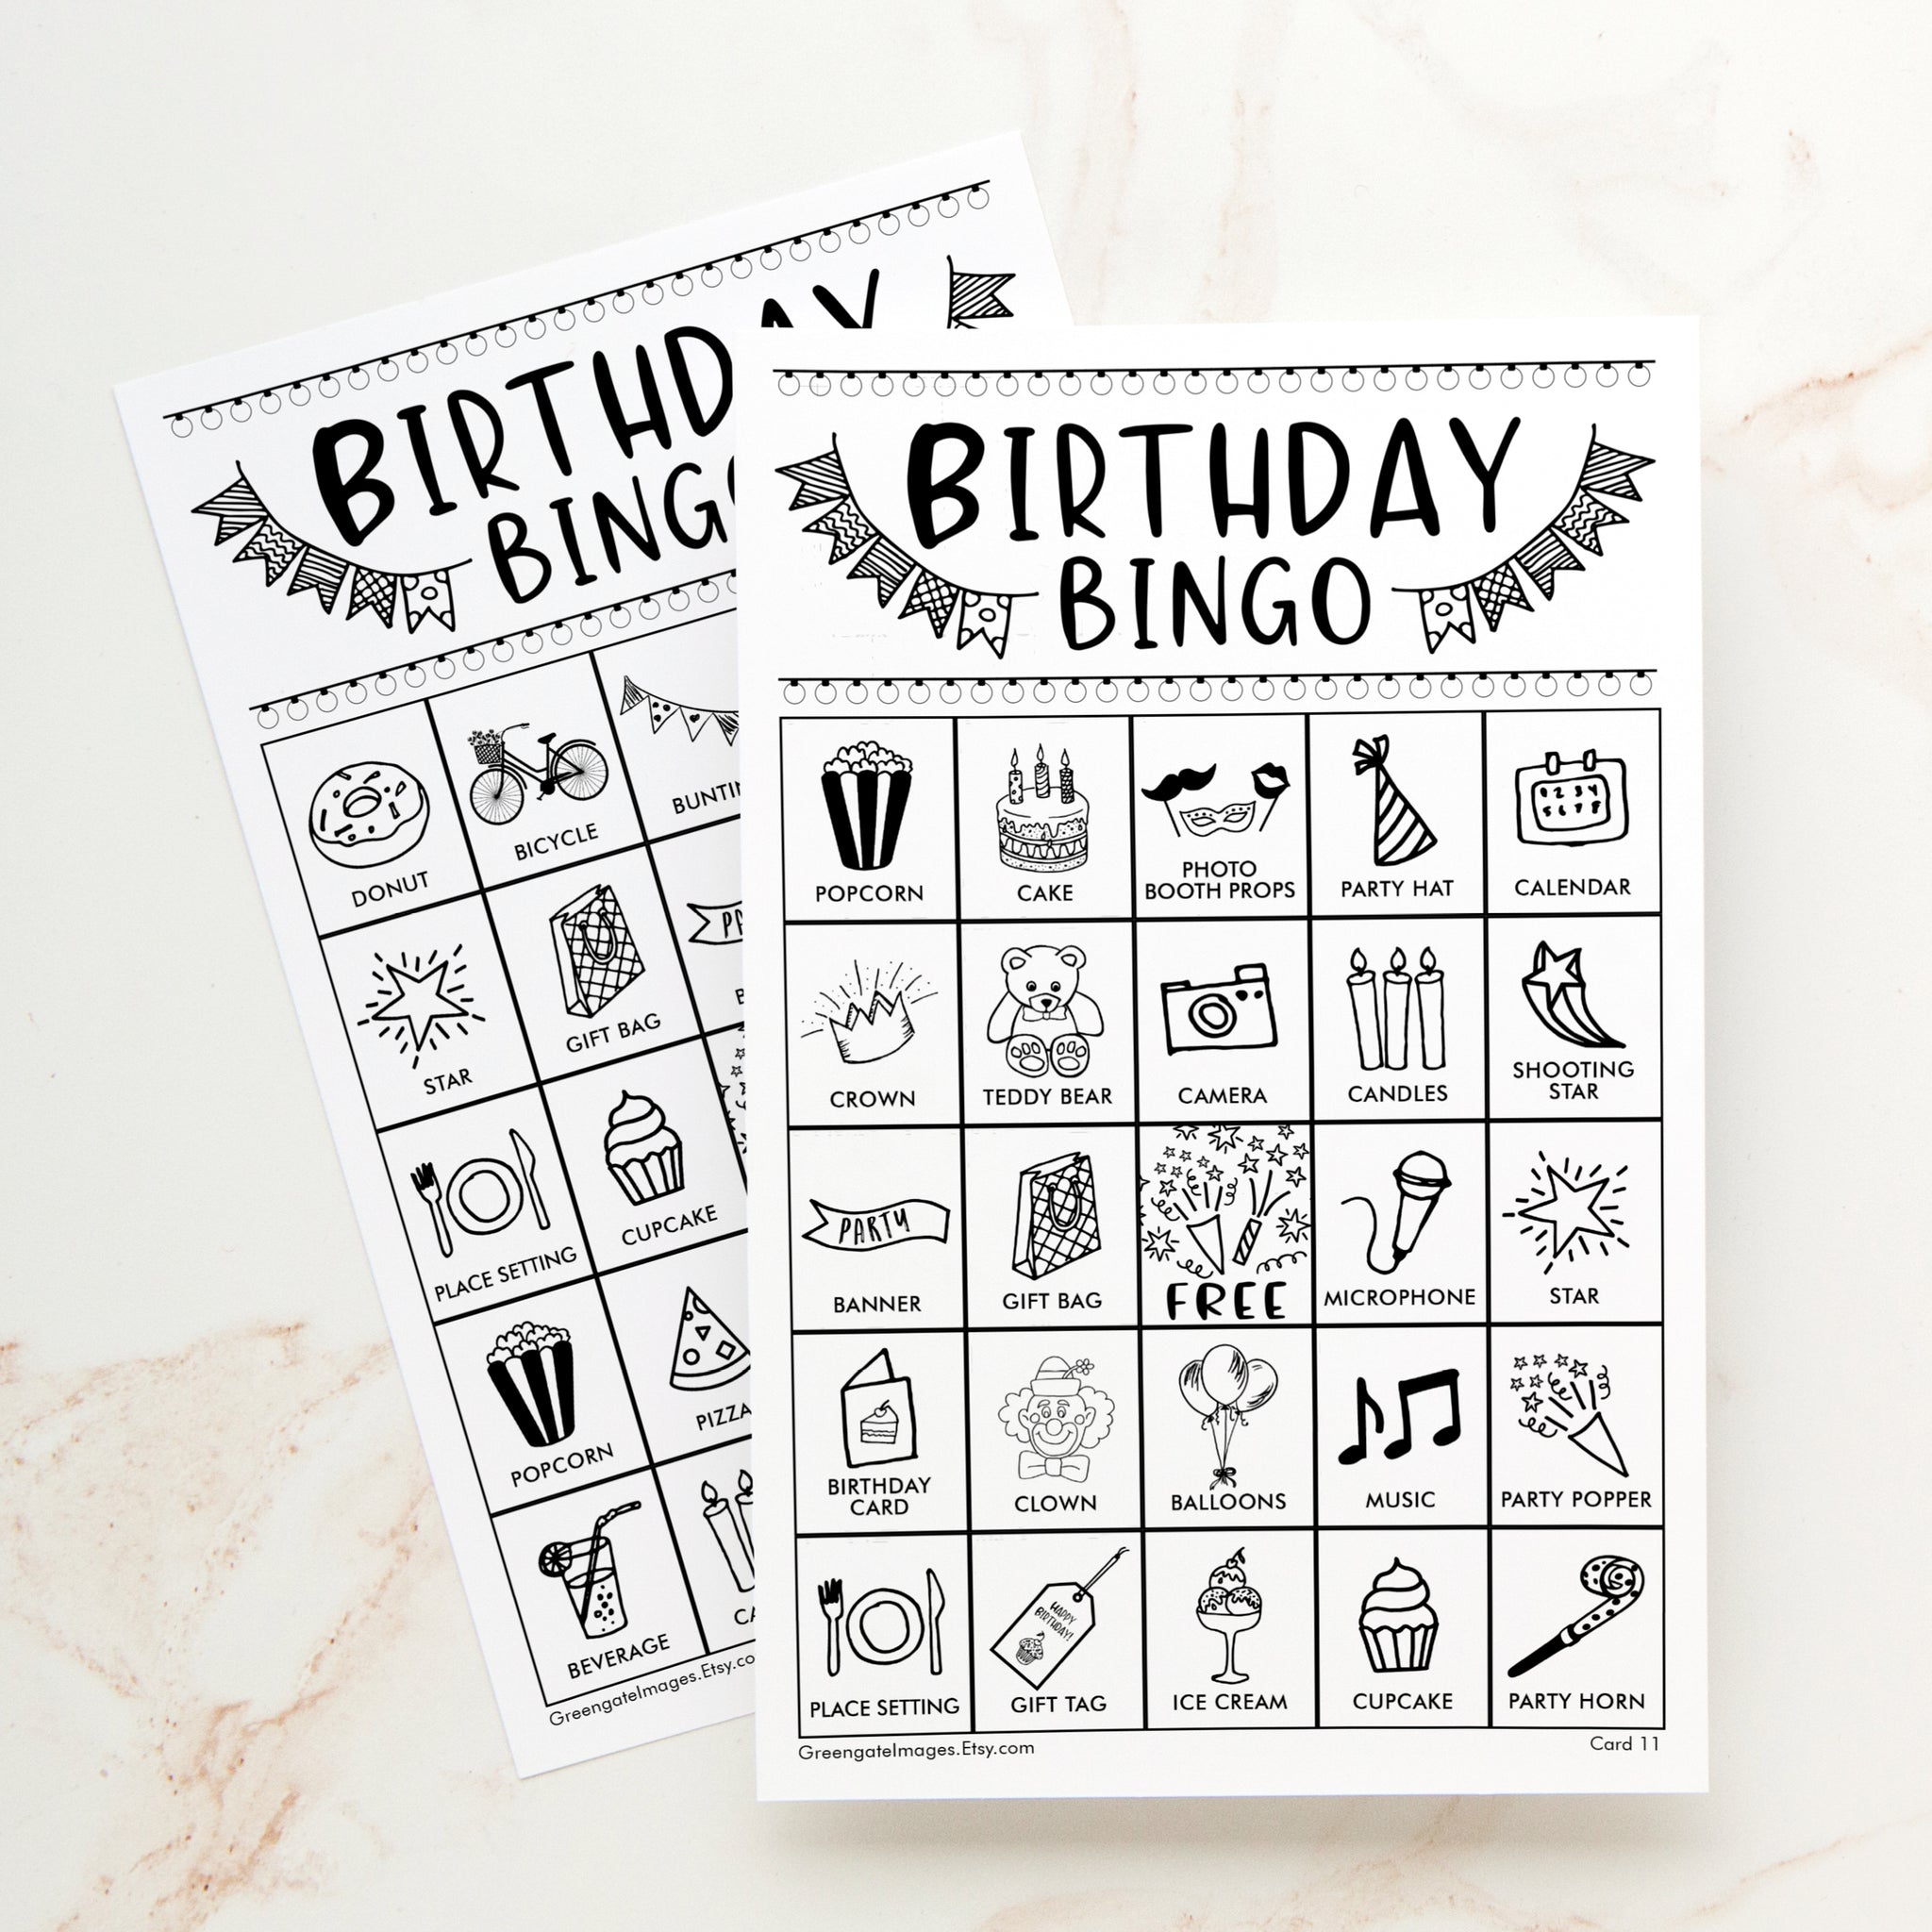 Birthday Bingo - Black and White – Greengate Images